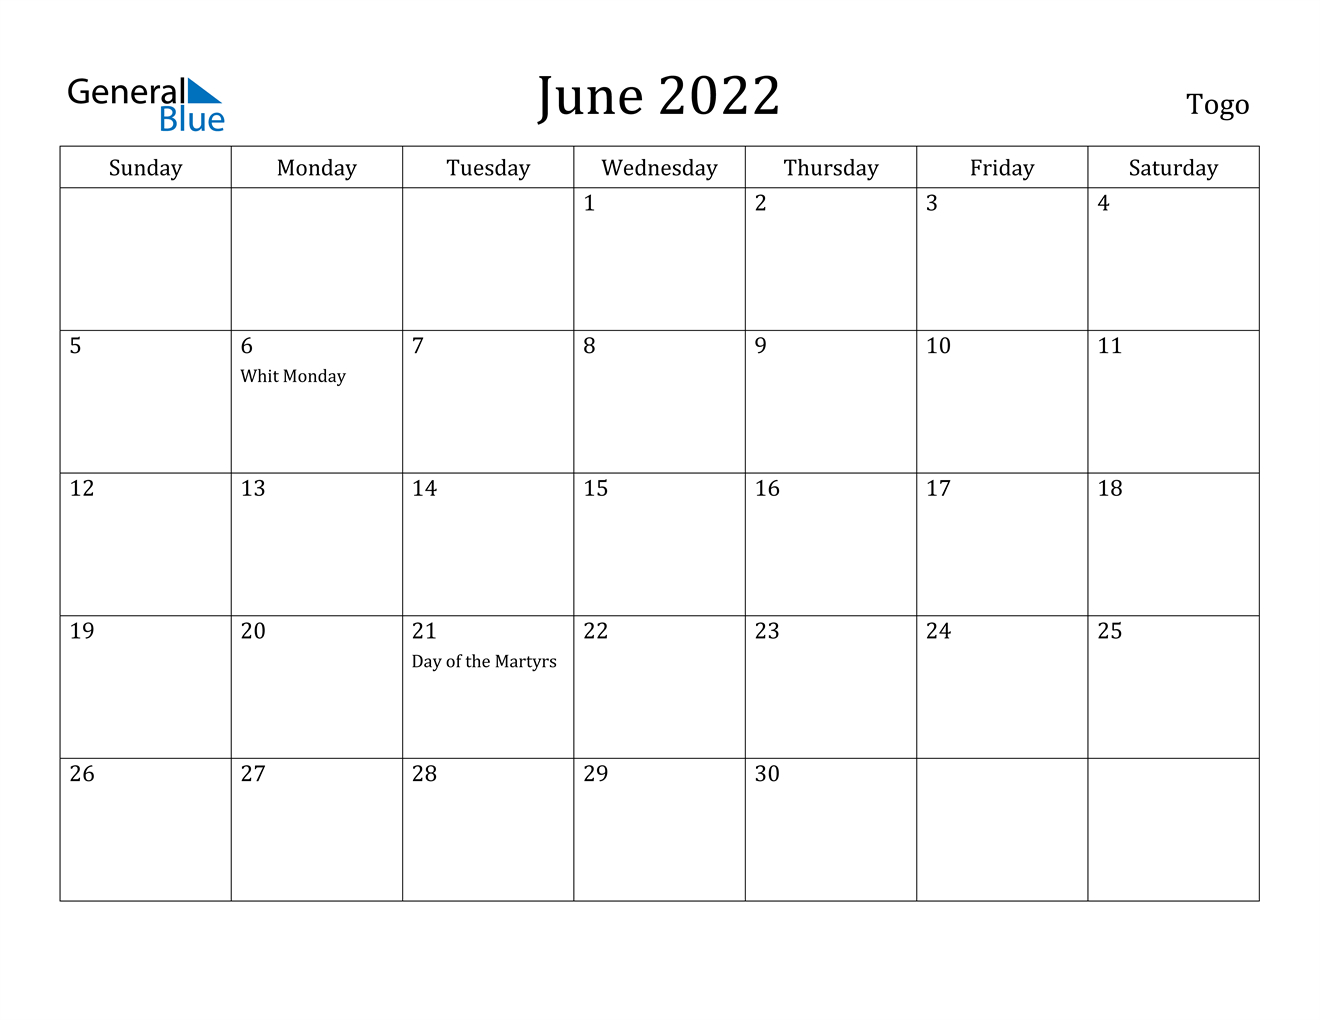 June 2022 Calendar - Togo